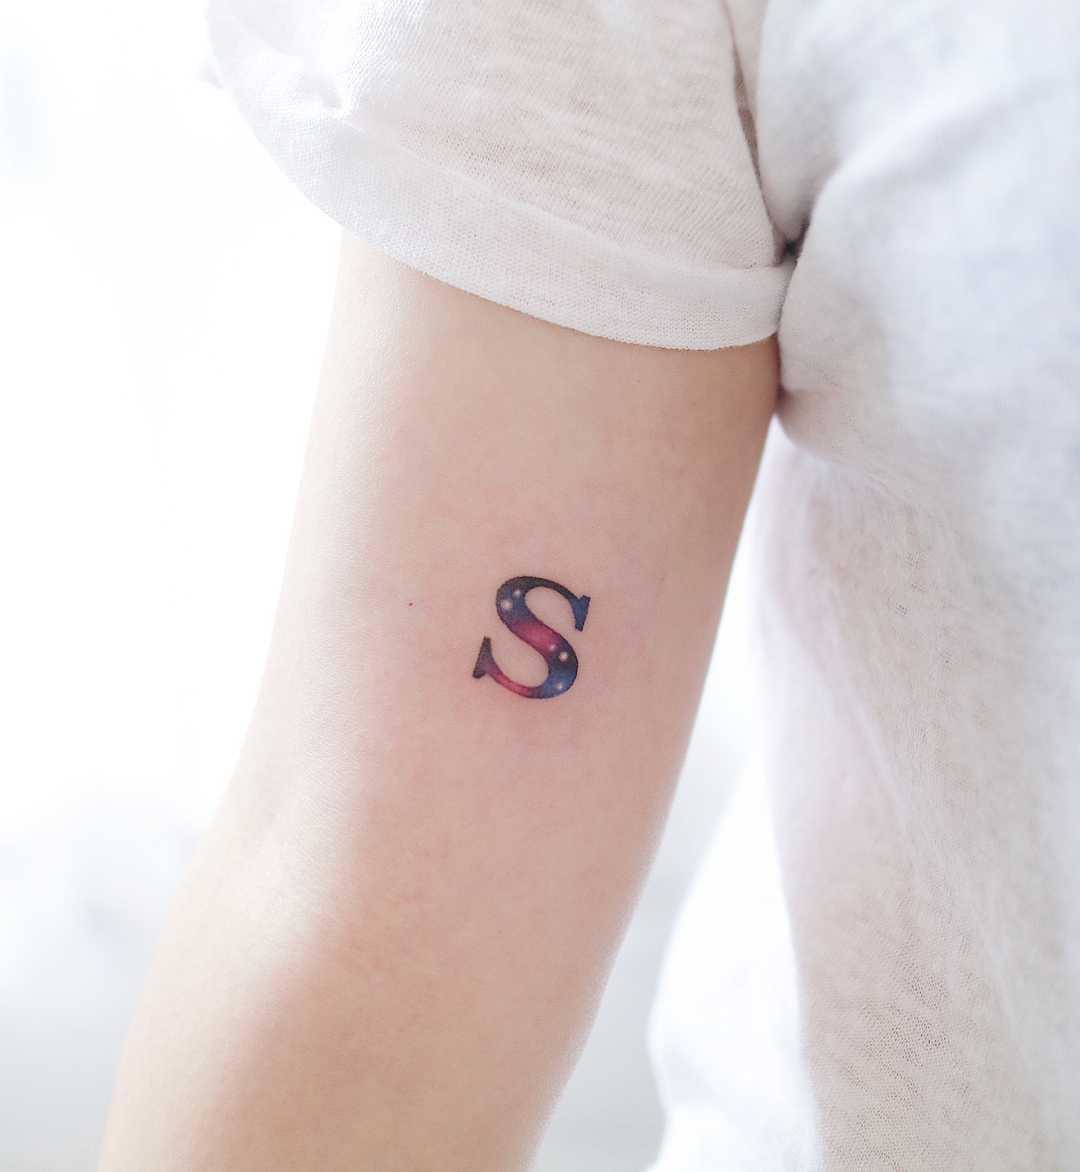 Tatuaje de letra "S" en colores